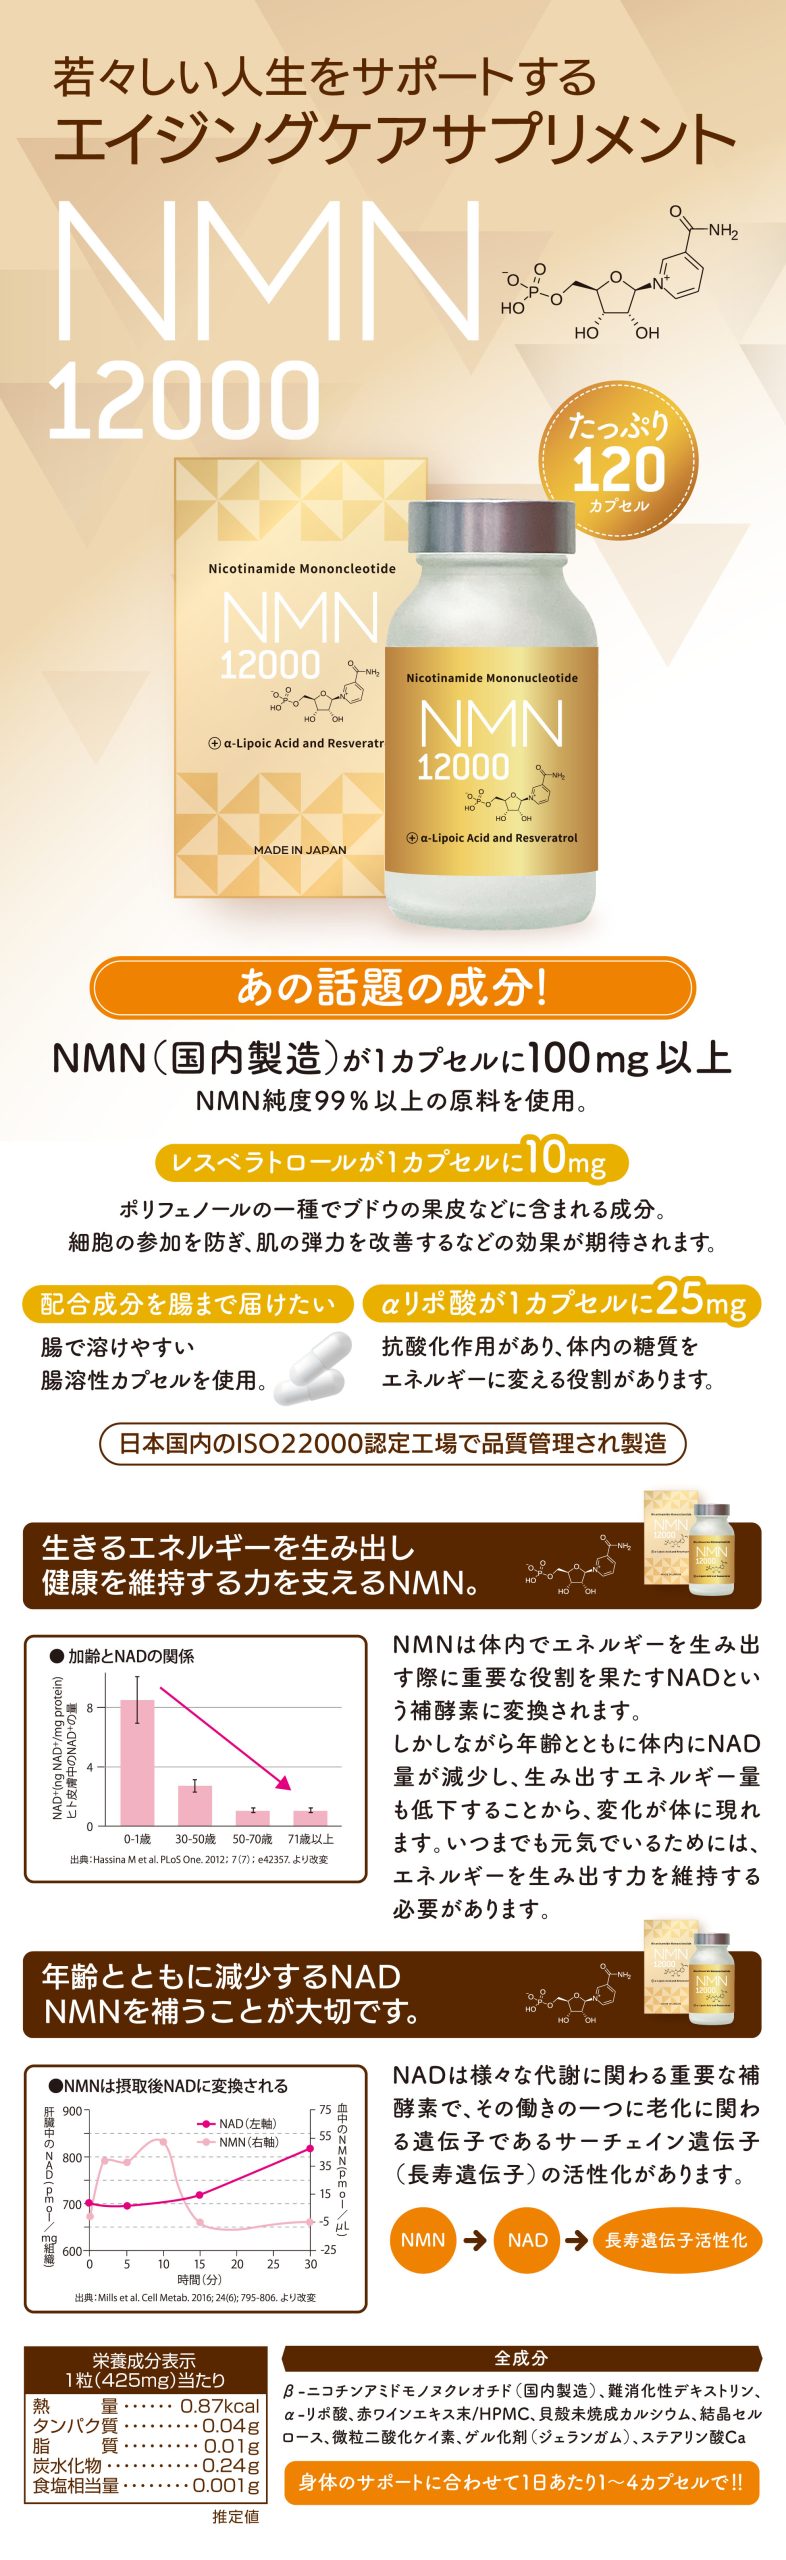  NMN純度99%以上の原料を使用。 レスベラトロールが1カプセルに10mg ポリフェノールの一種でブドウの果皮などに含まれる成分。 